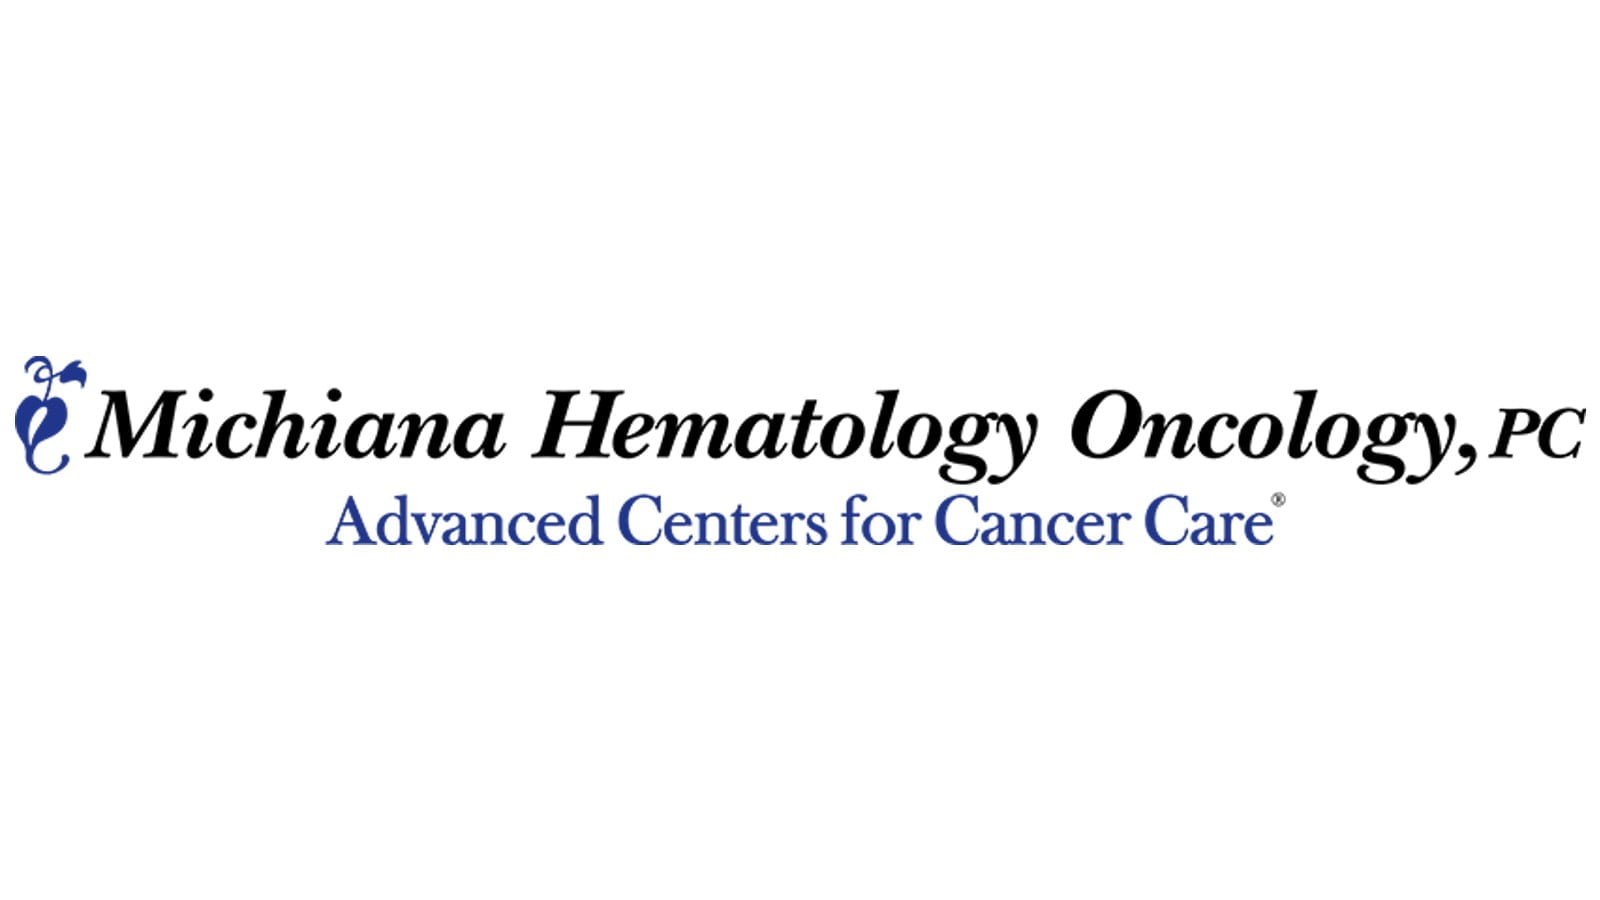 Michiana Hematology Oncology